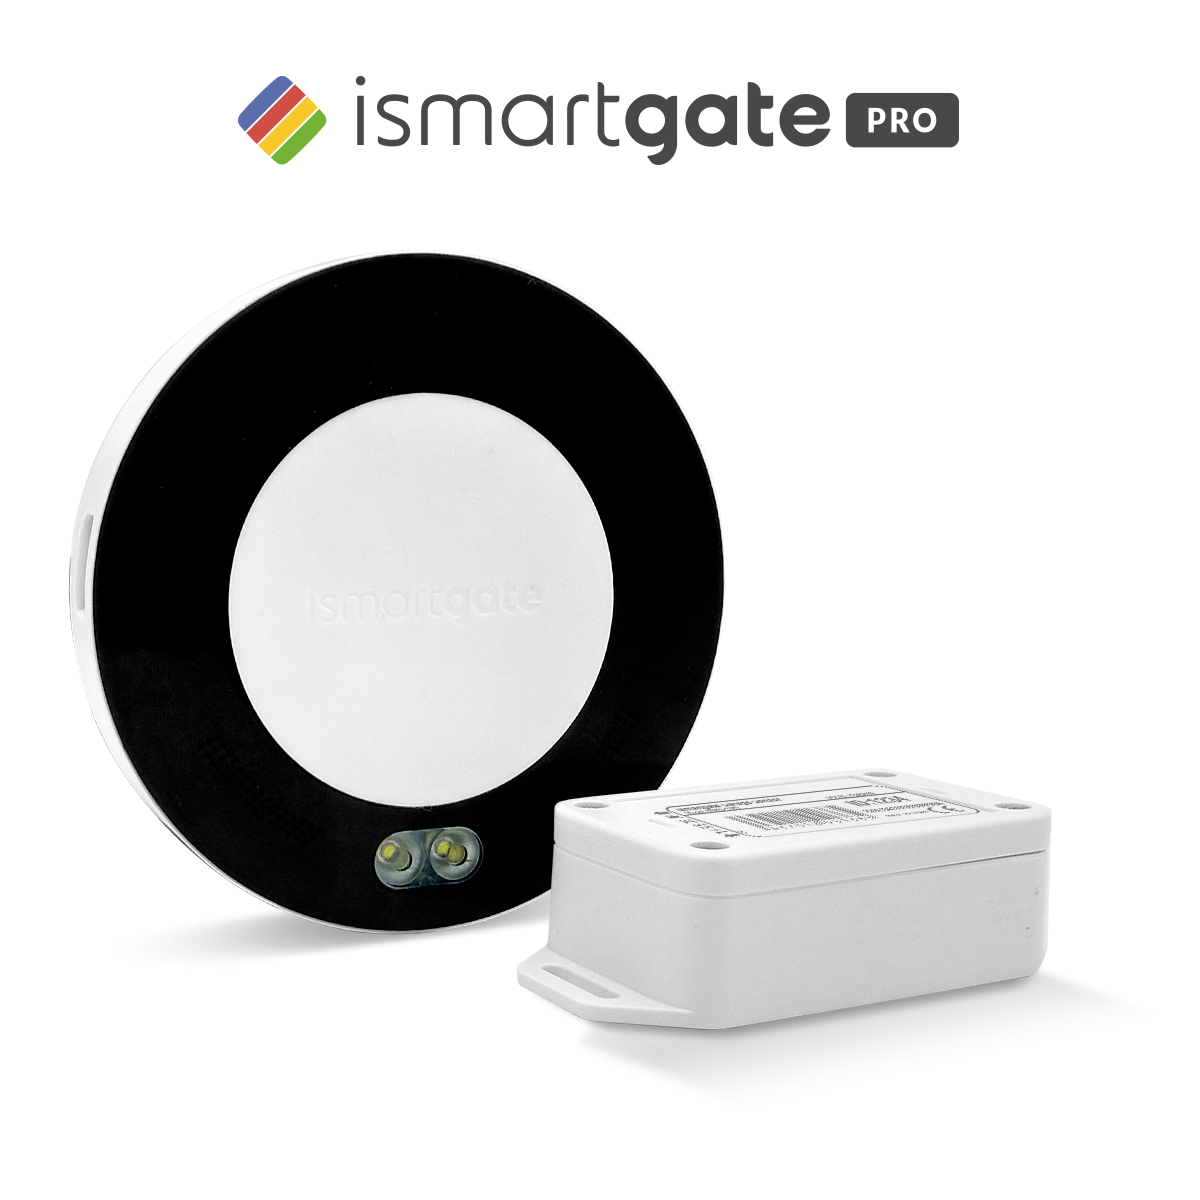 iSmartgate Remote Garage/Gate opener